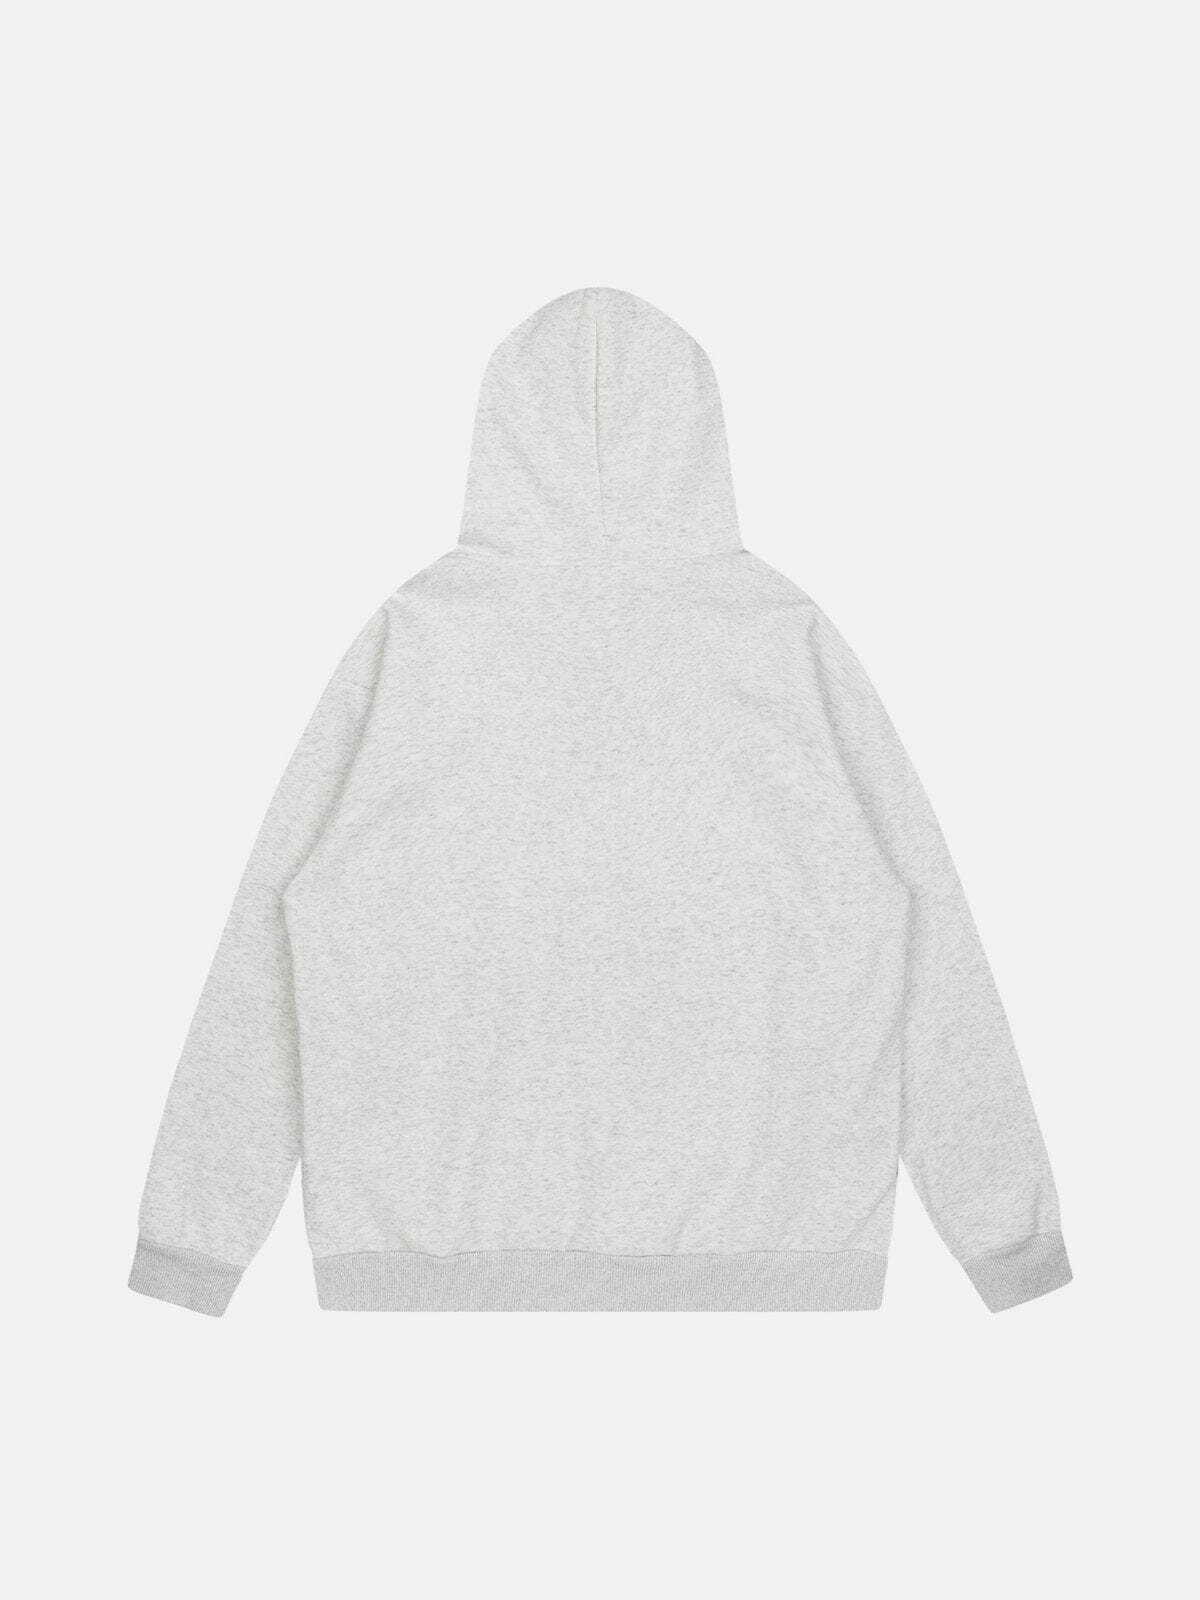 sliced print pullover hoodie edgy black & white streetwear 2205